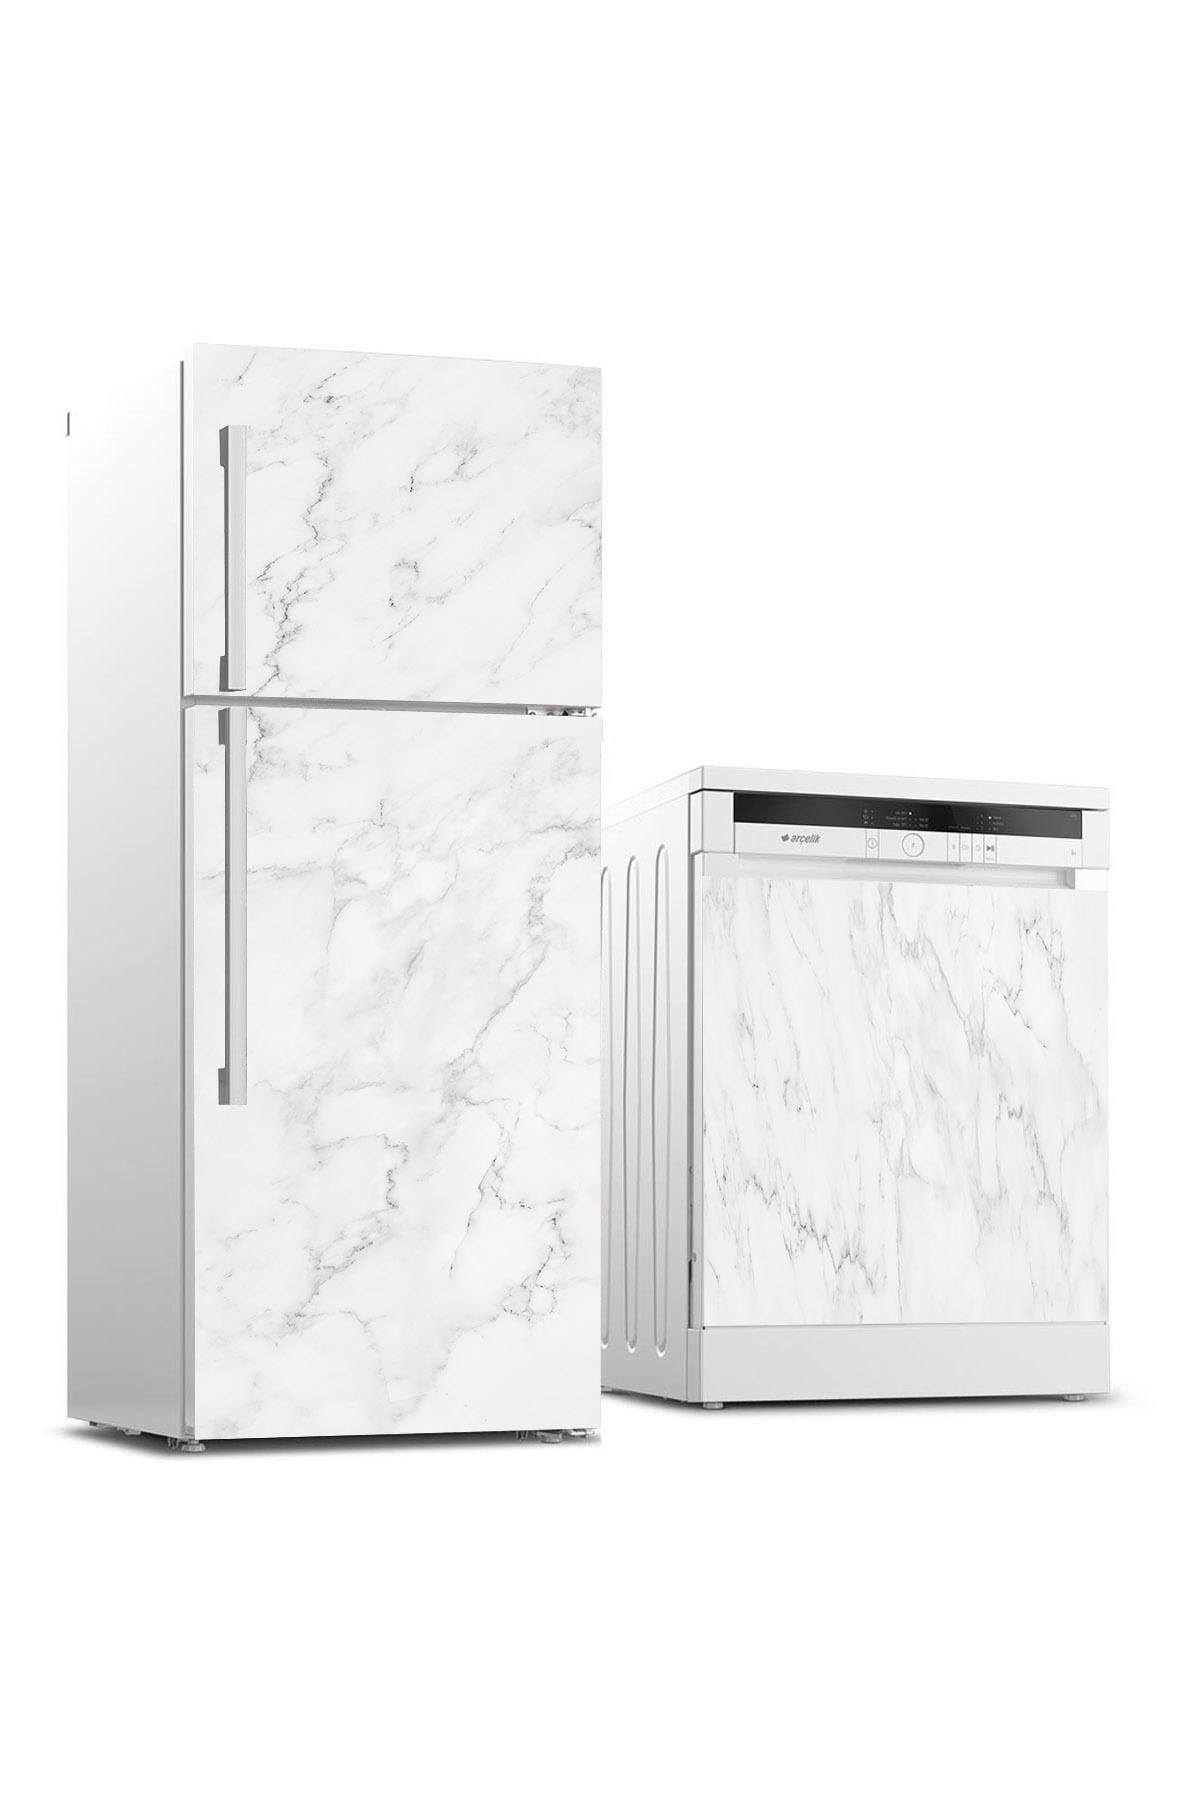 StickerArt Buzdolabı Ve Bulaşık Makinası Beyaz Eşya Sticker Kaplama Beyaz Mermer